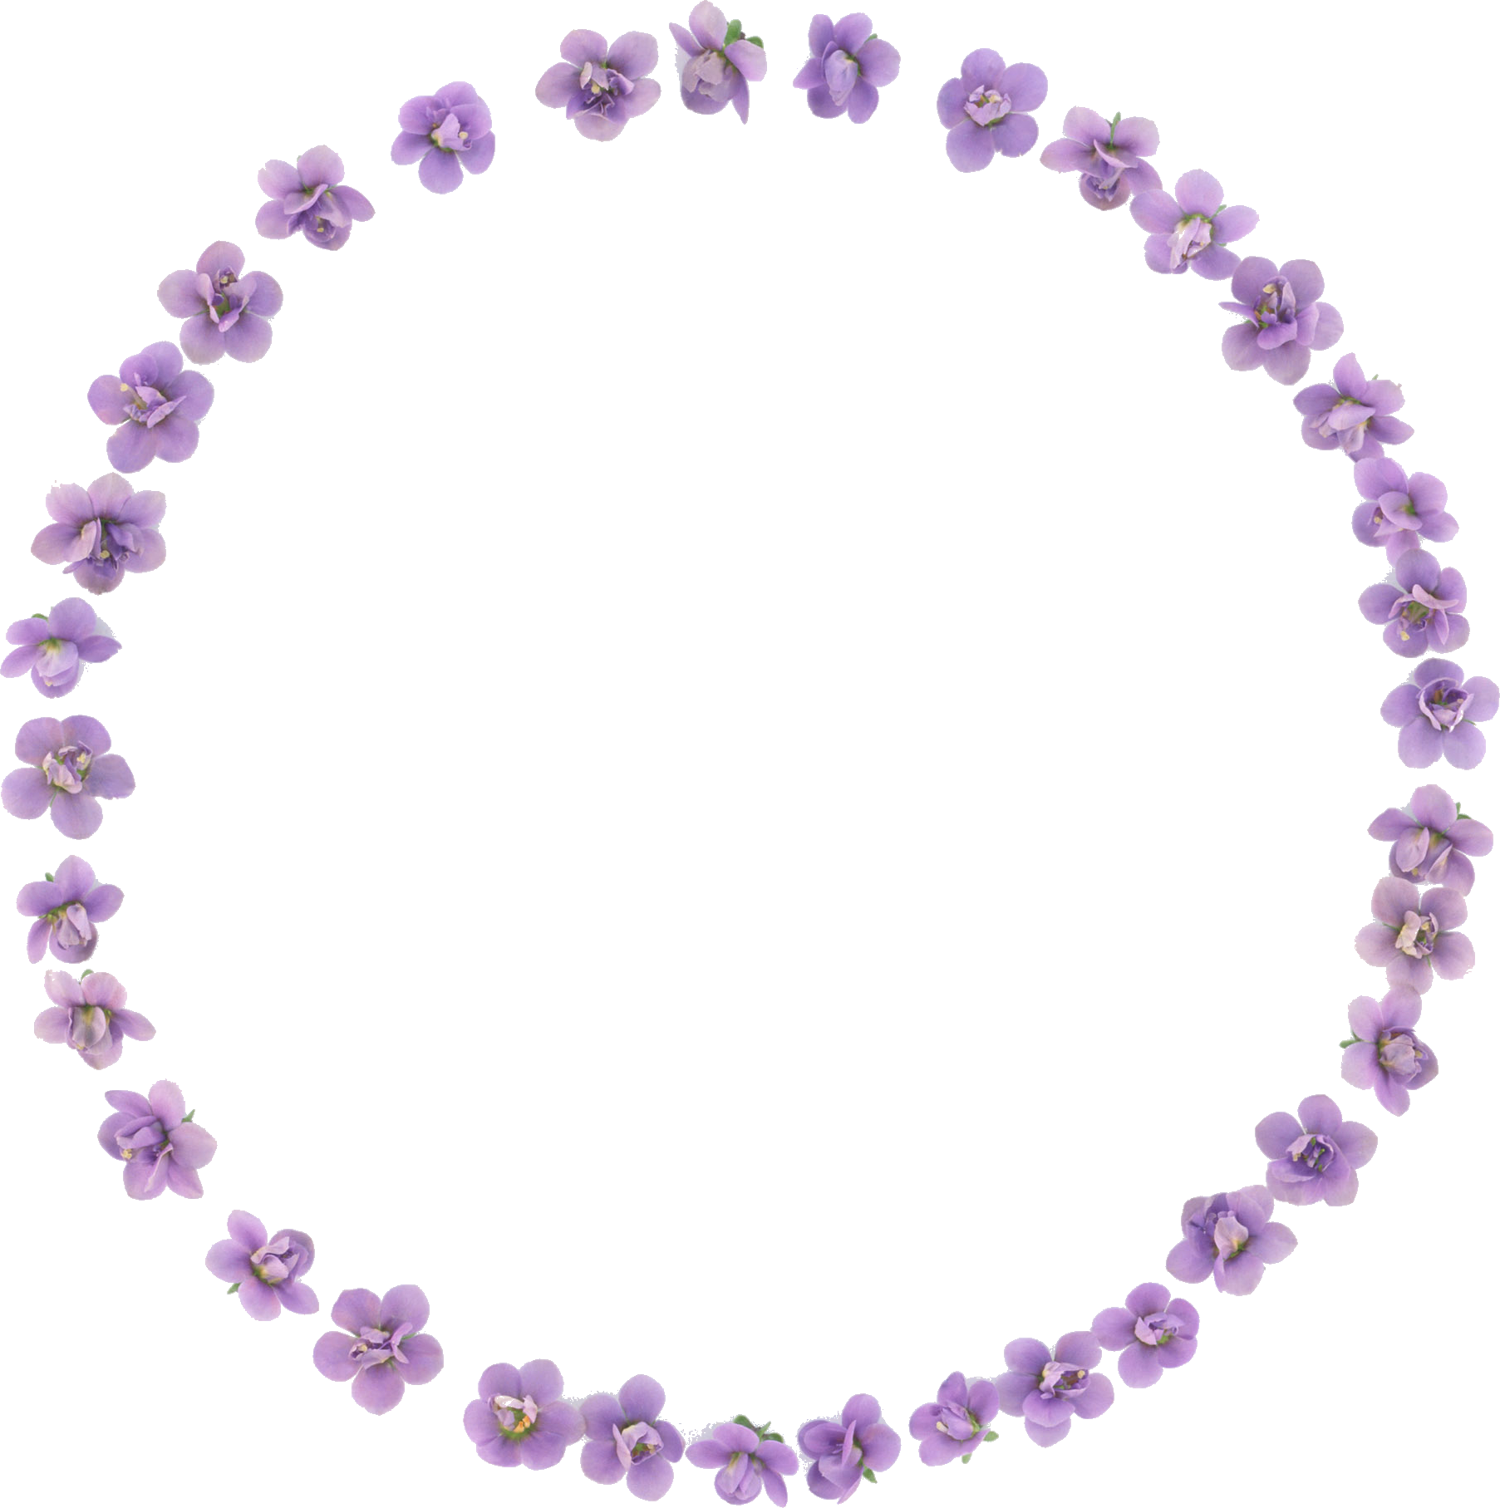 花の写真 フリー素材 フレーム枠no 032 紫 すみれ 輪